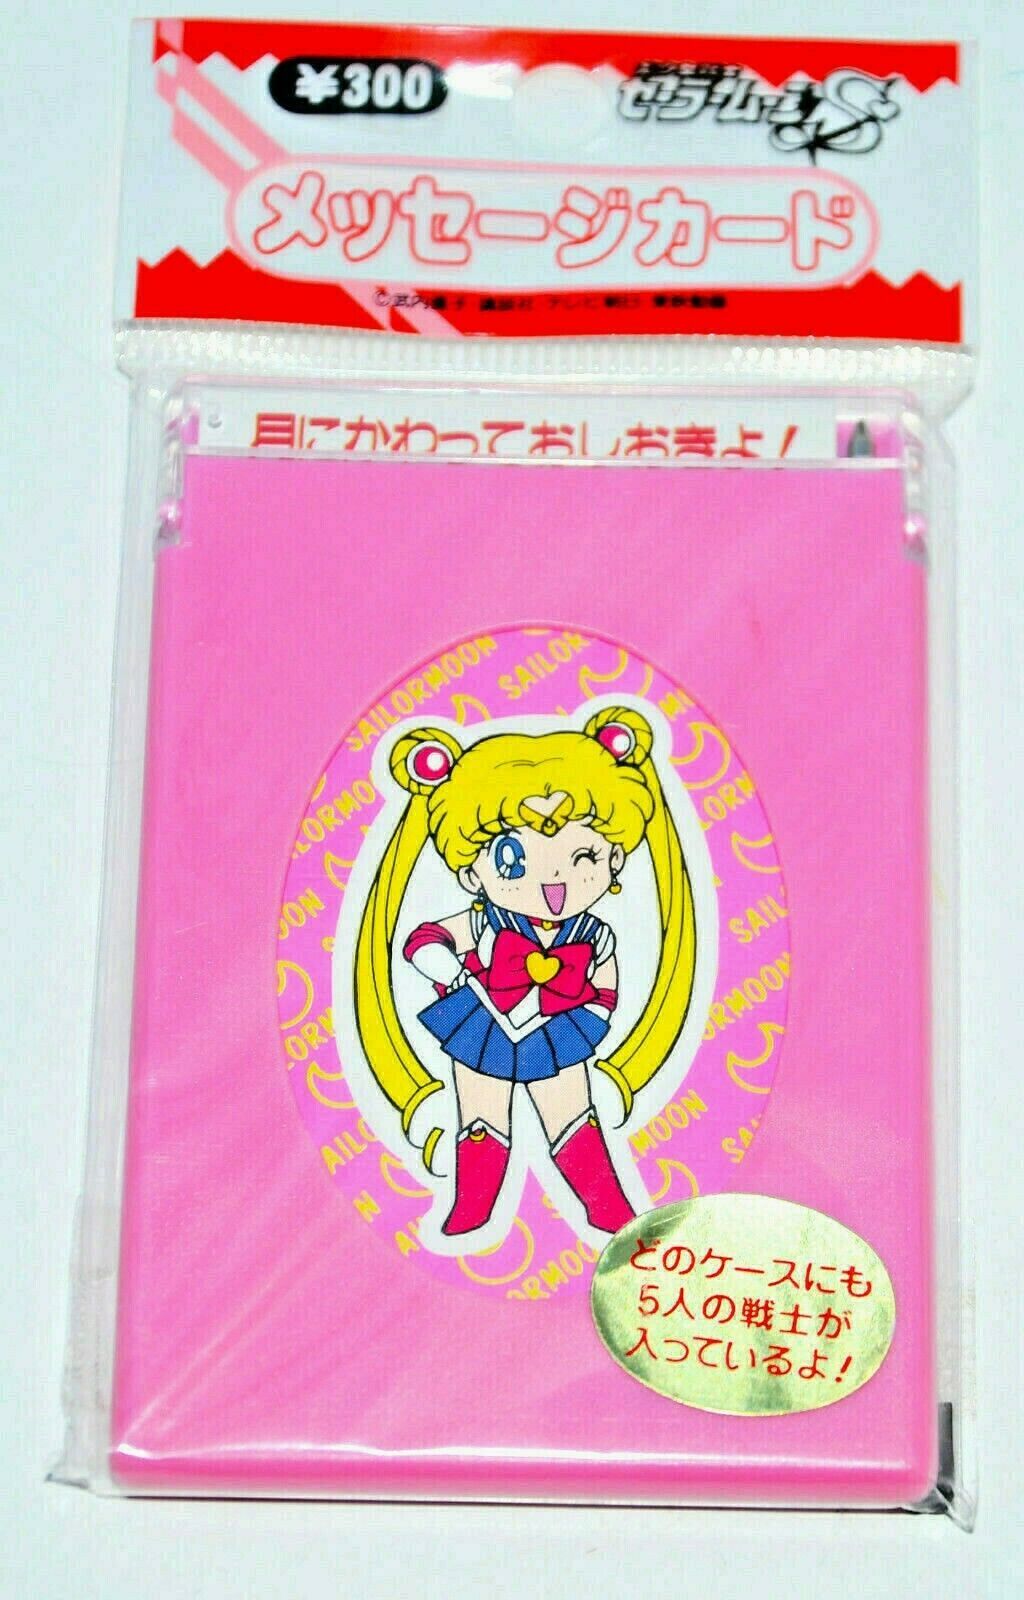 Primary image for Sailor Moon S Meishi Message Card holder case pen set Japanese vintage